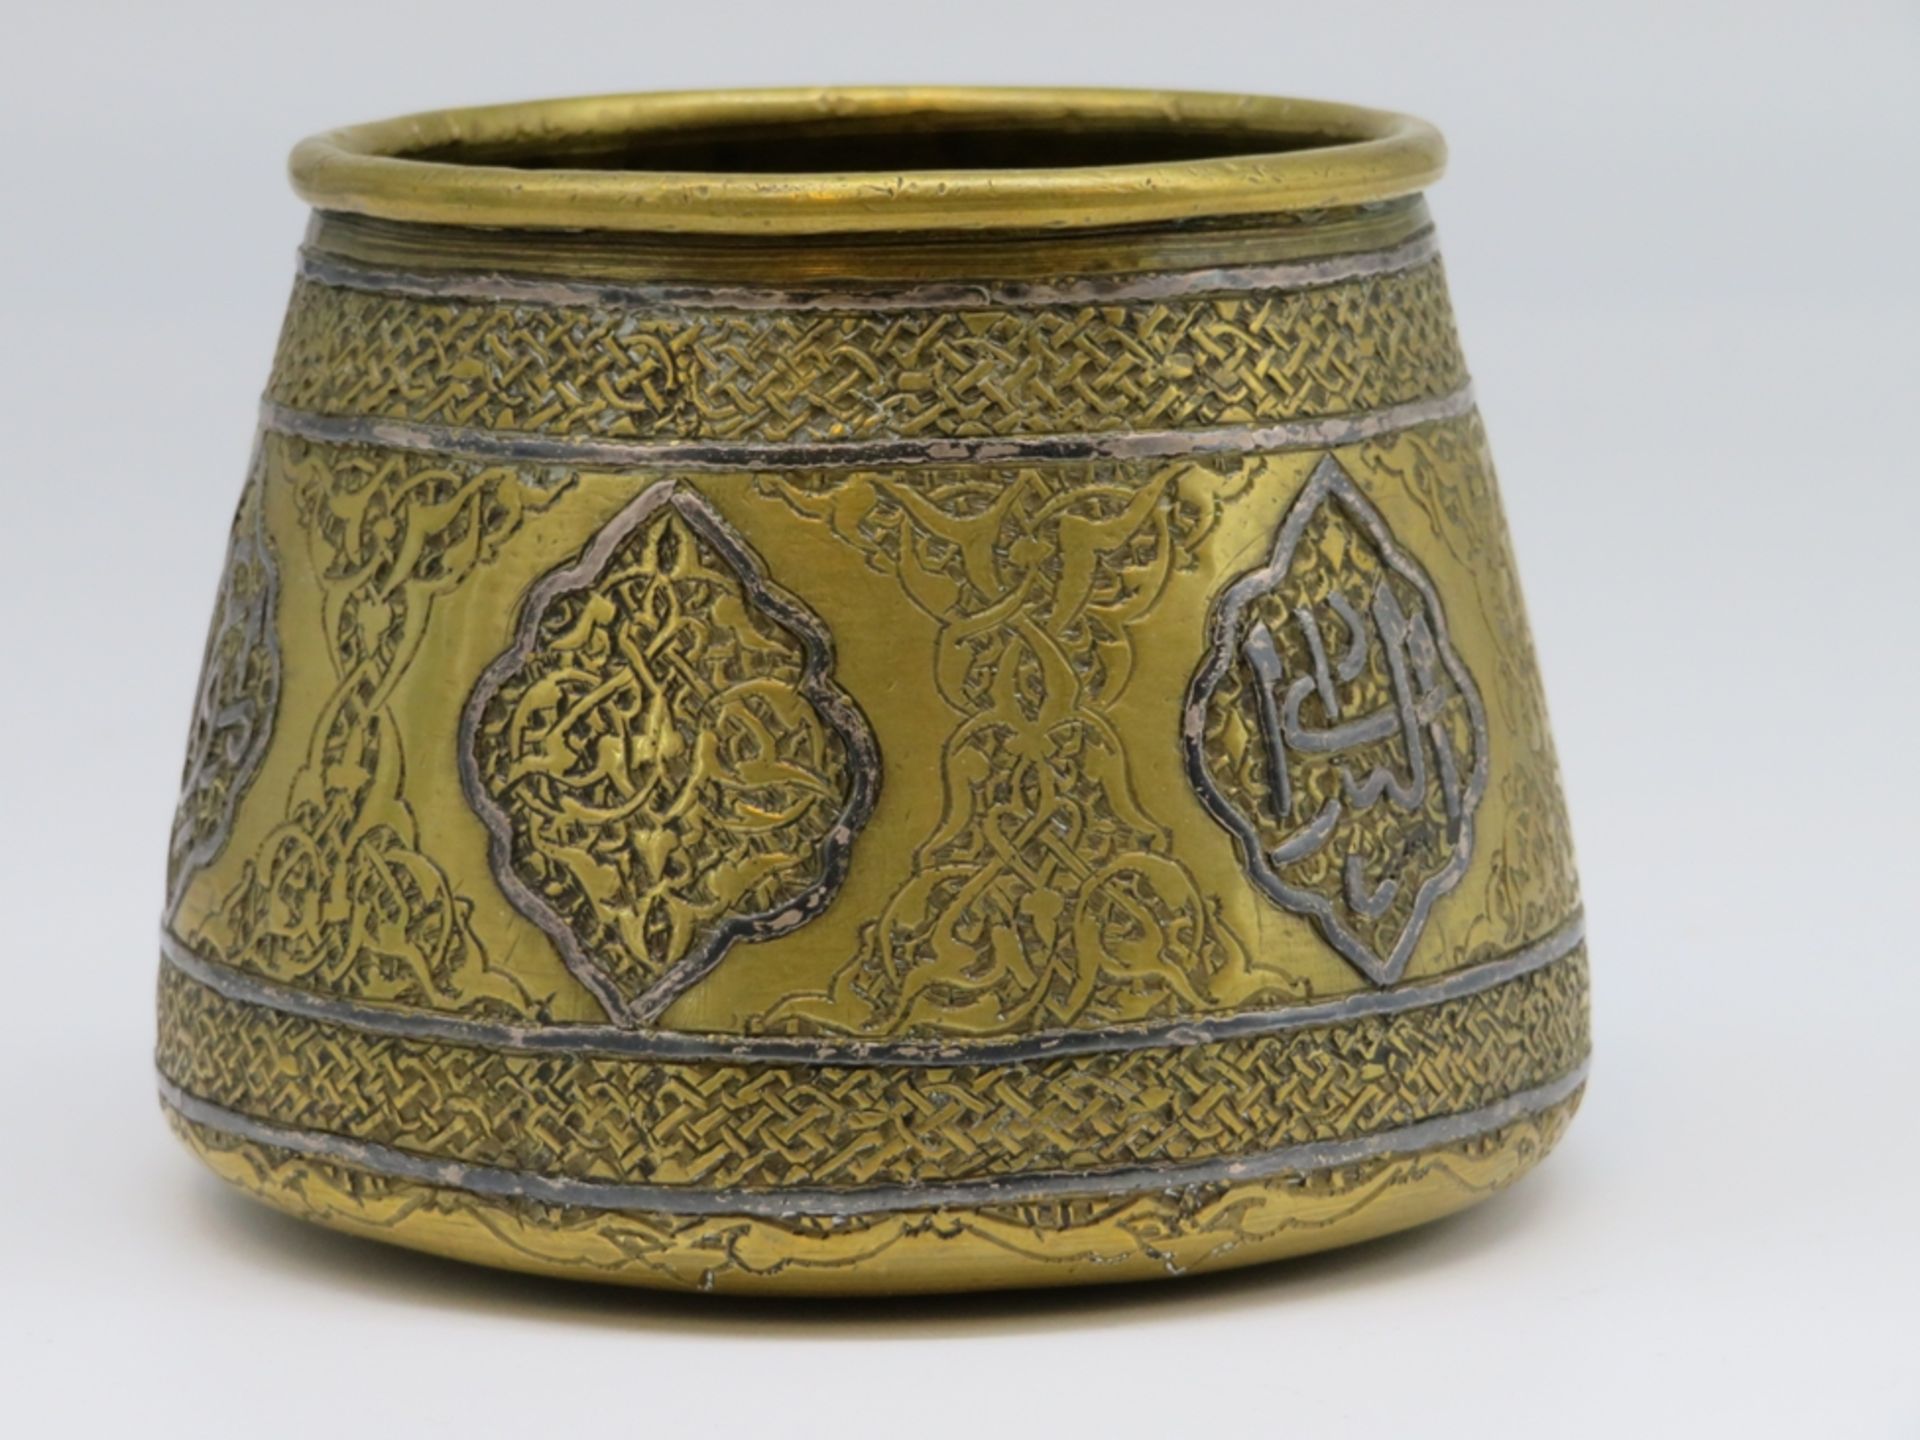 Topf, Persien, 19. Jahrhundert, Kupfer getrieben, fein ziseliert, Silbereinlagen, h 7 cm, d 10 cm. - Bild 2 aus 2